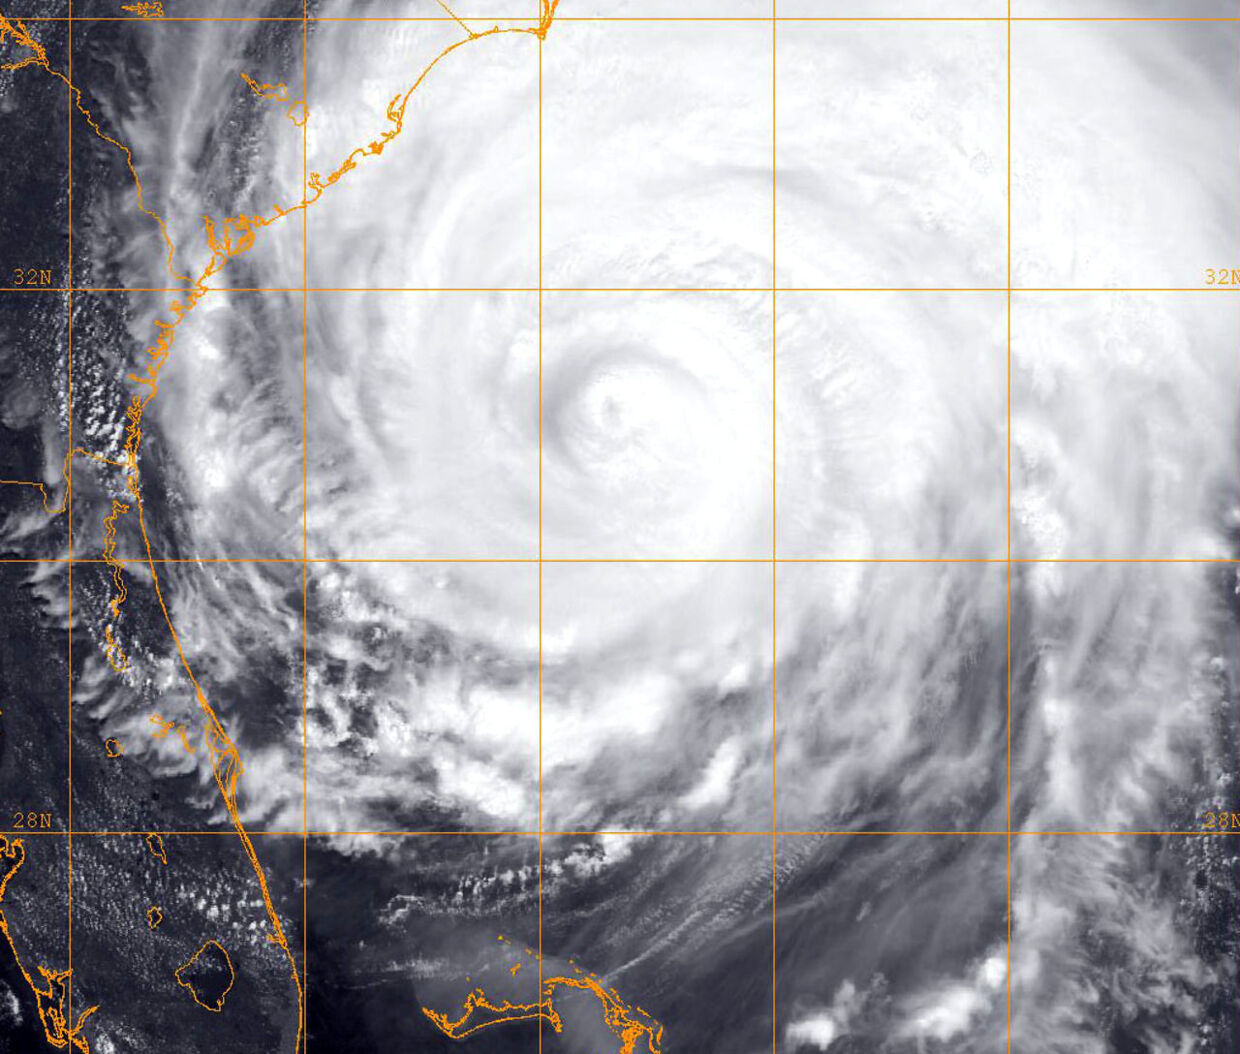 Irene er nu negraderet fra en kategori 2 til en kategori 1 orkan. Der findes i alt fem niveauer for orkaners styrke.